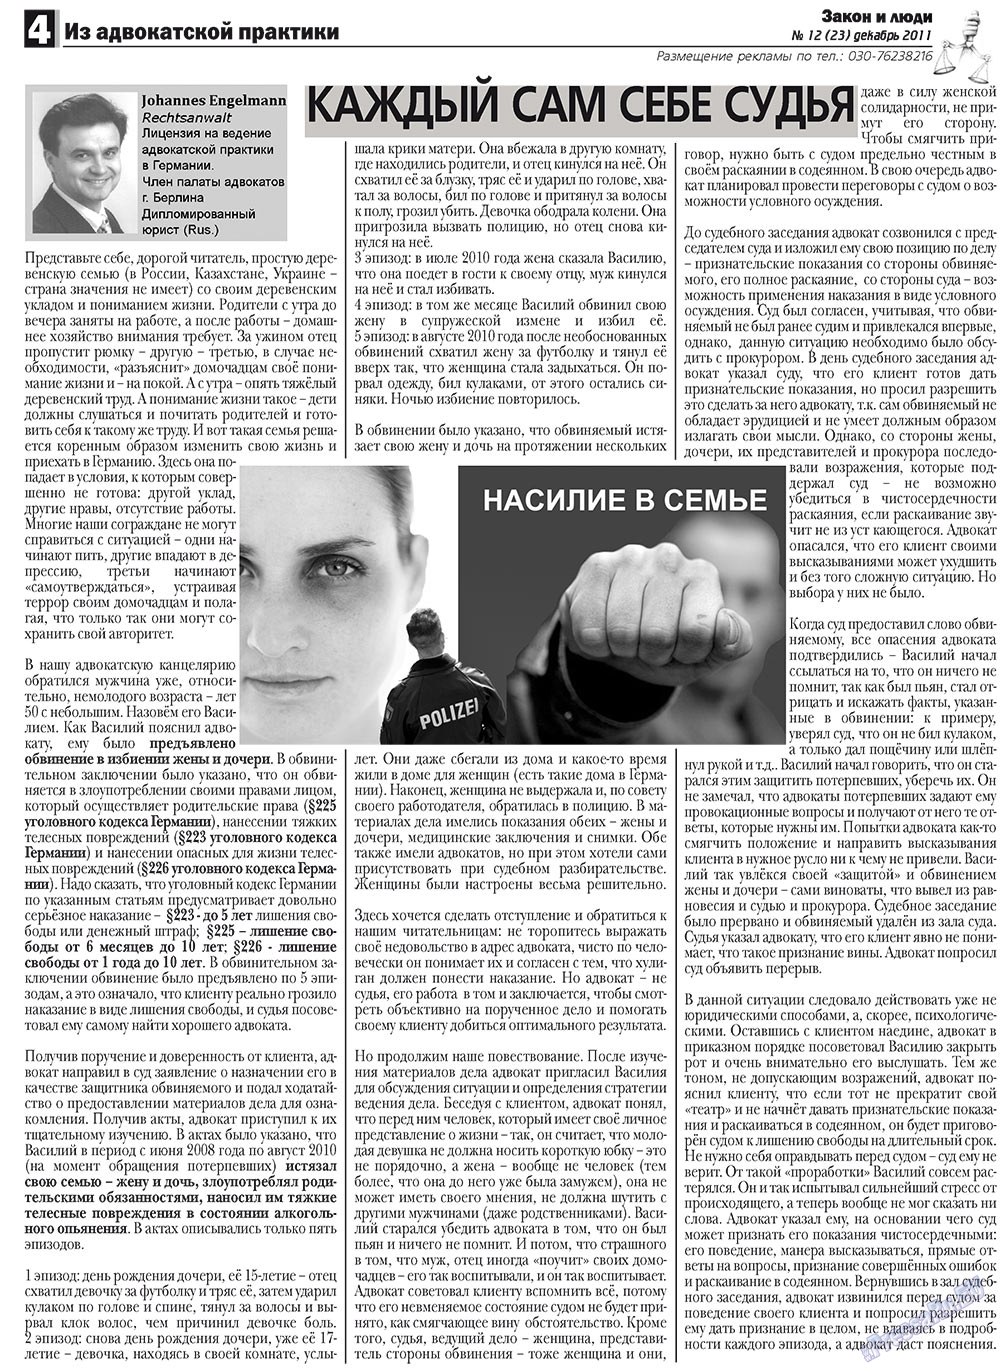 Закон и люди, газета. 2011 №12 стр.4